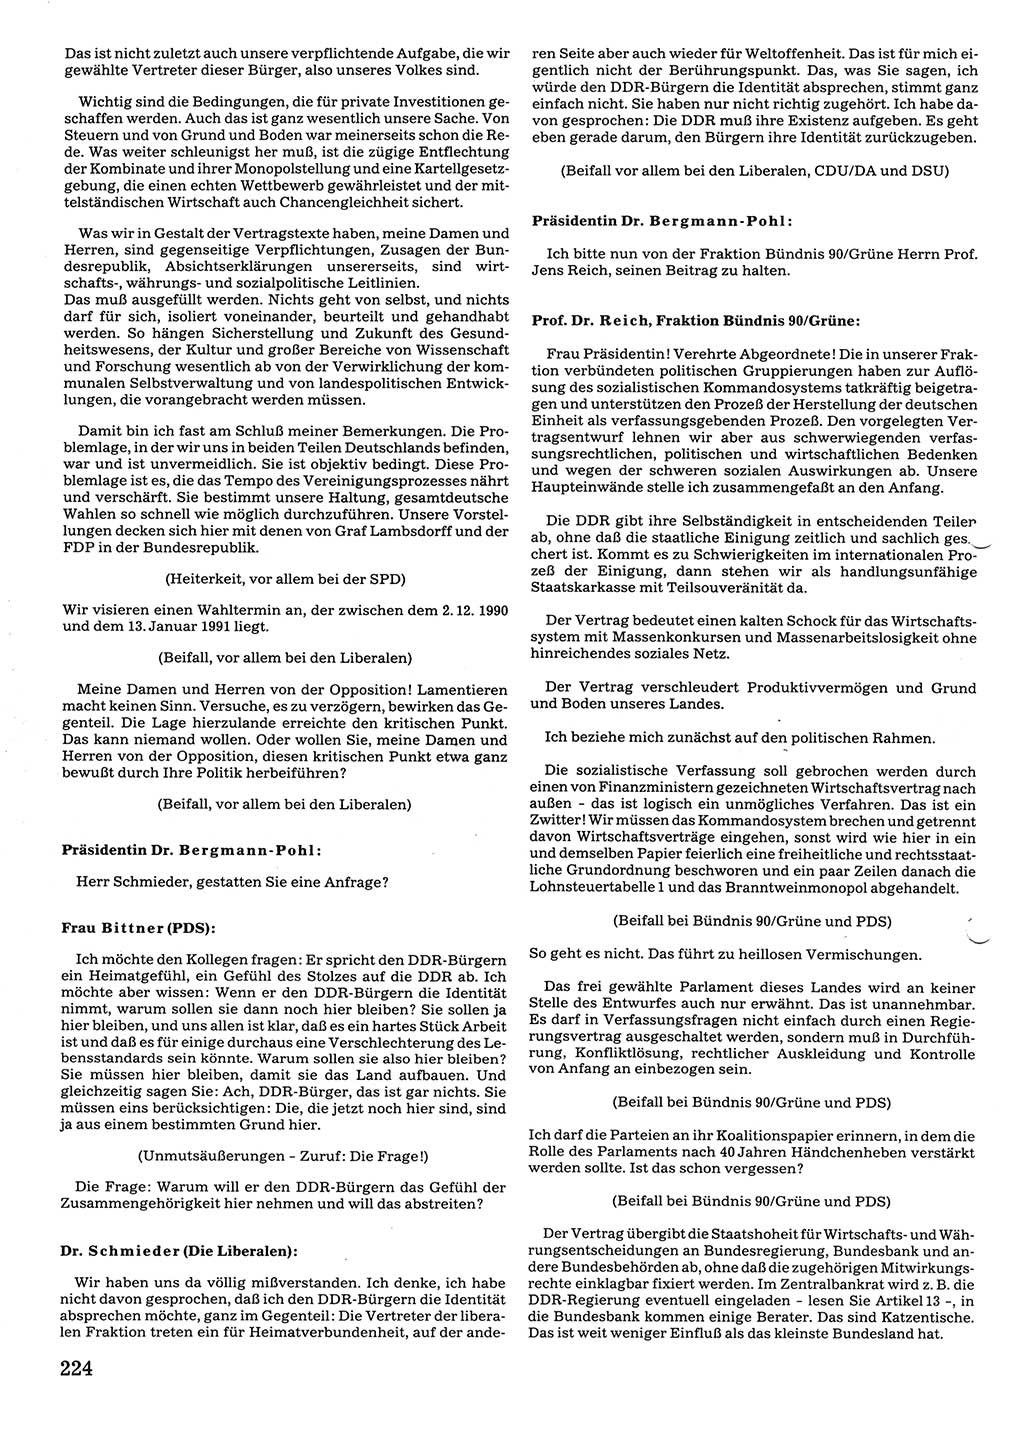 Tagungen der Volkskammer (VK) der Deutschen Demokratischen Republik (DDR), 10. Wahlperiode 1990, Seite 224 (VK. DDR 10. WP. 1990, Prot. Tg. 1-38, 5.4.-2.10.1990, S. 224)